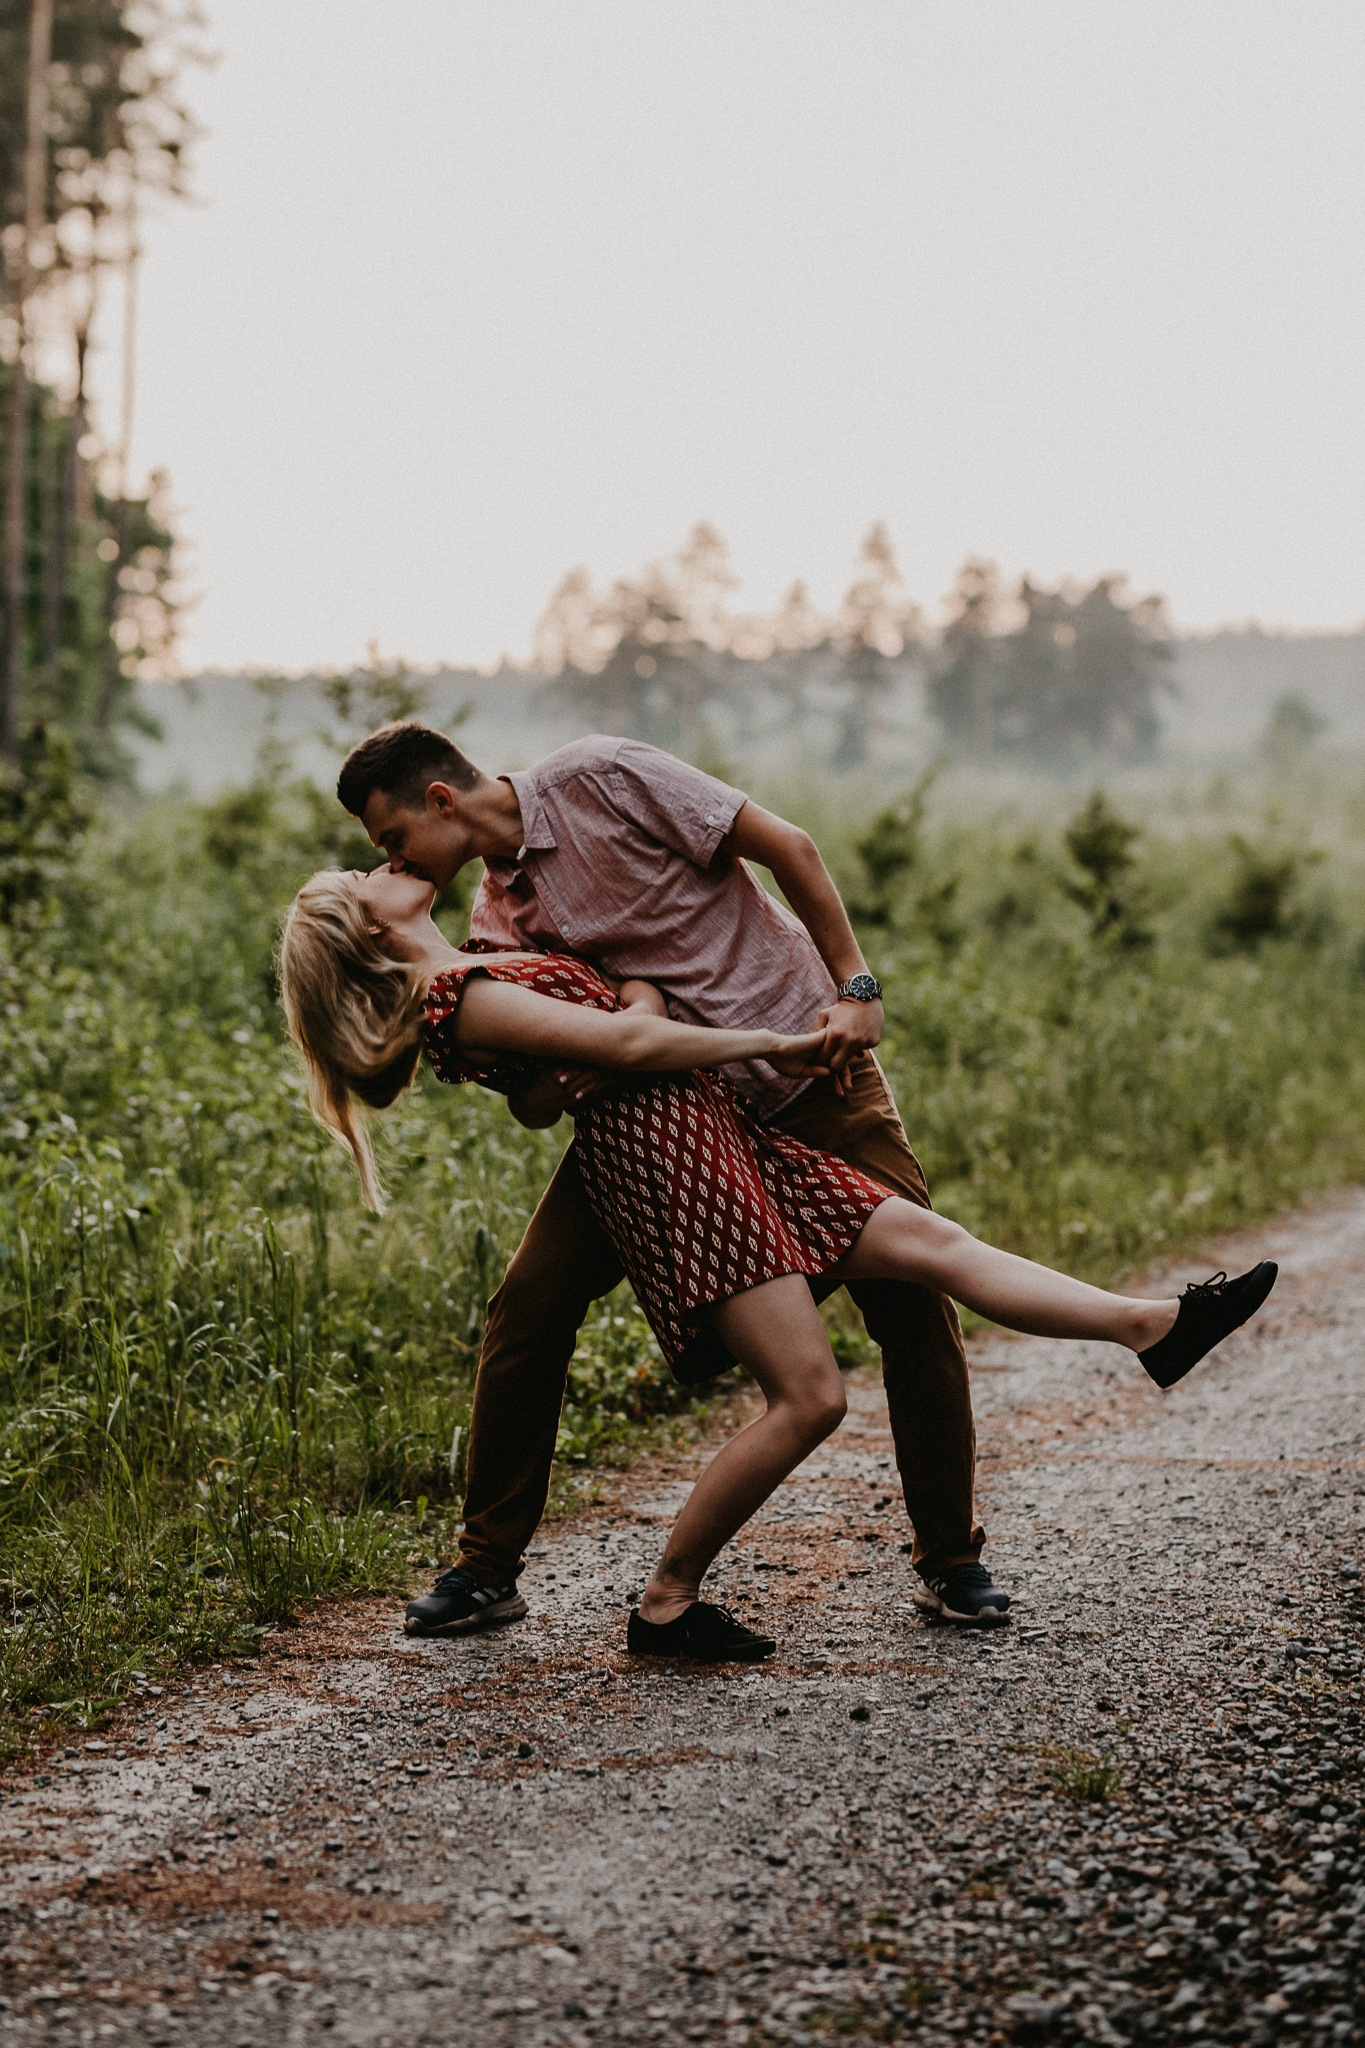 Partner całuje partnerkę w tańcu jednocześnie ją pochylając ku ziemii